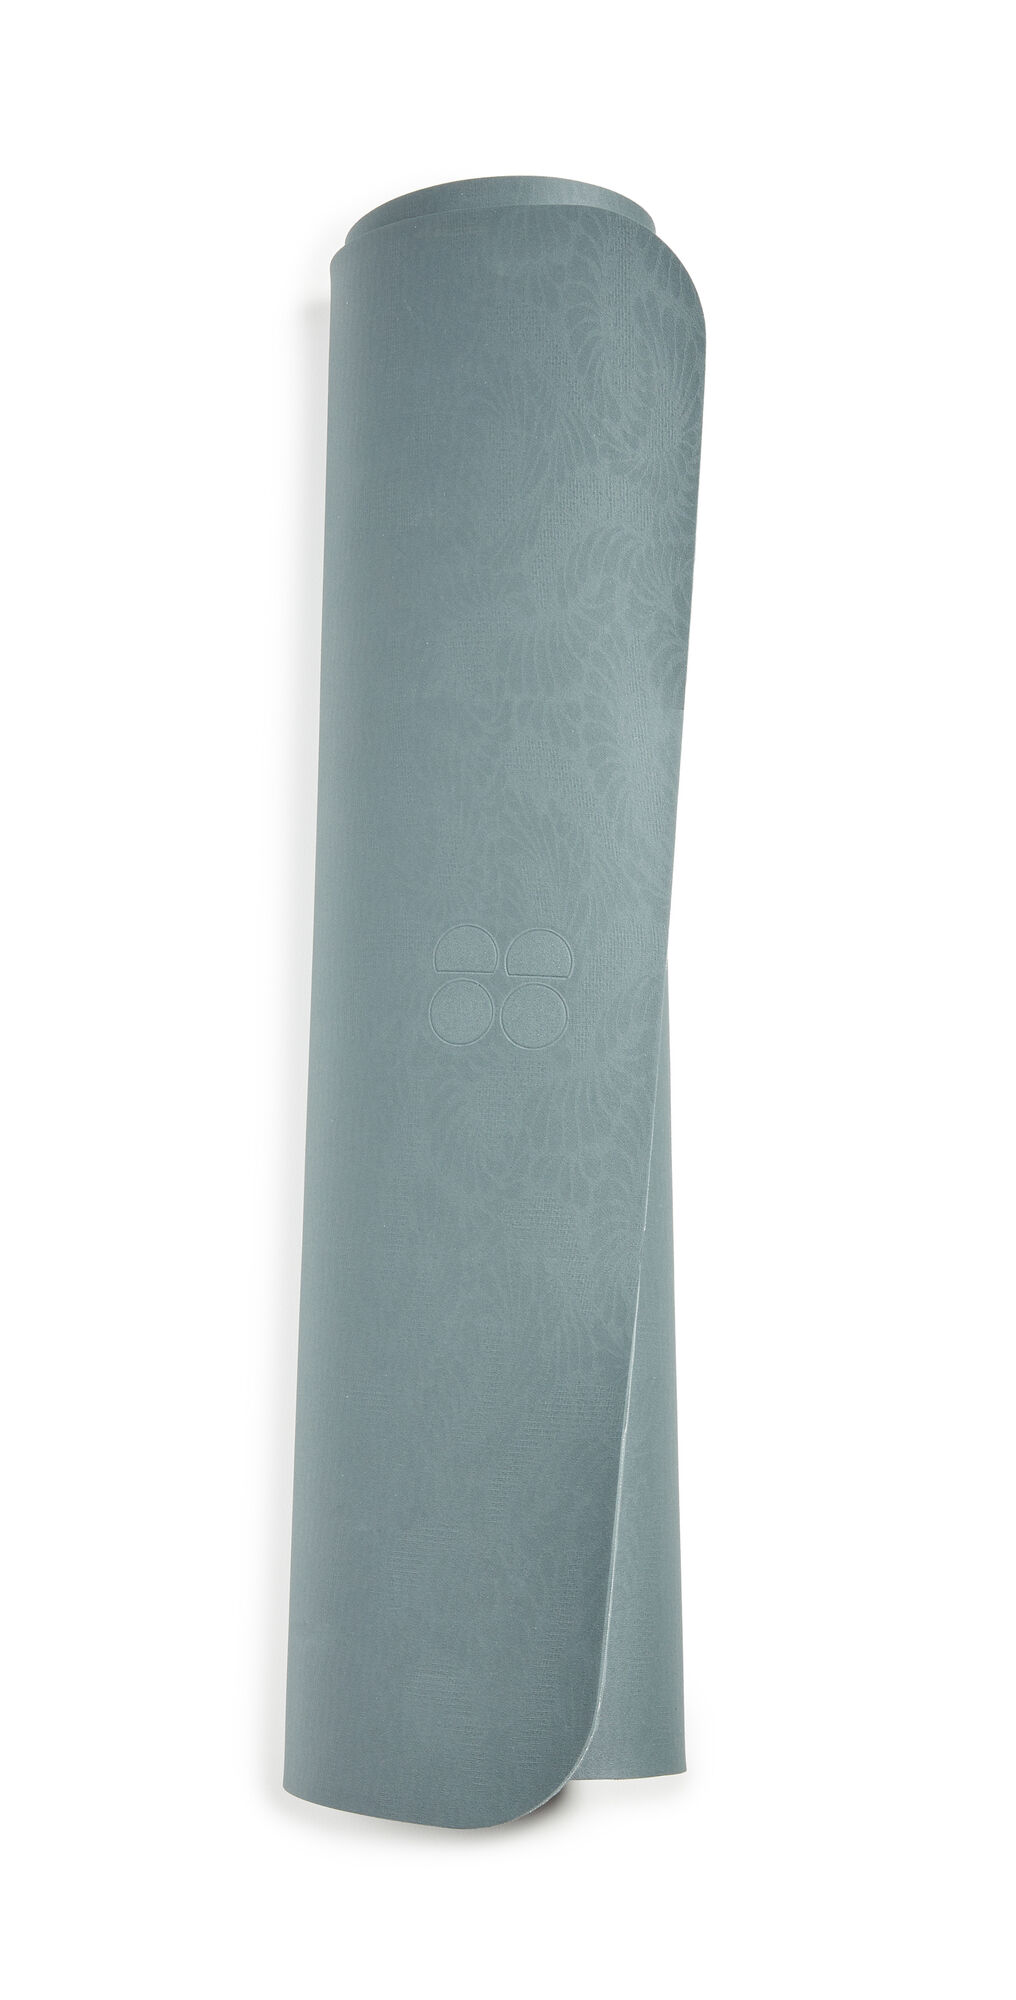 Sweaty Betty Yoga Mat Charcoal Grey One Size    size: